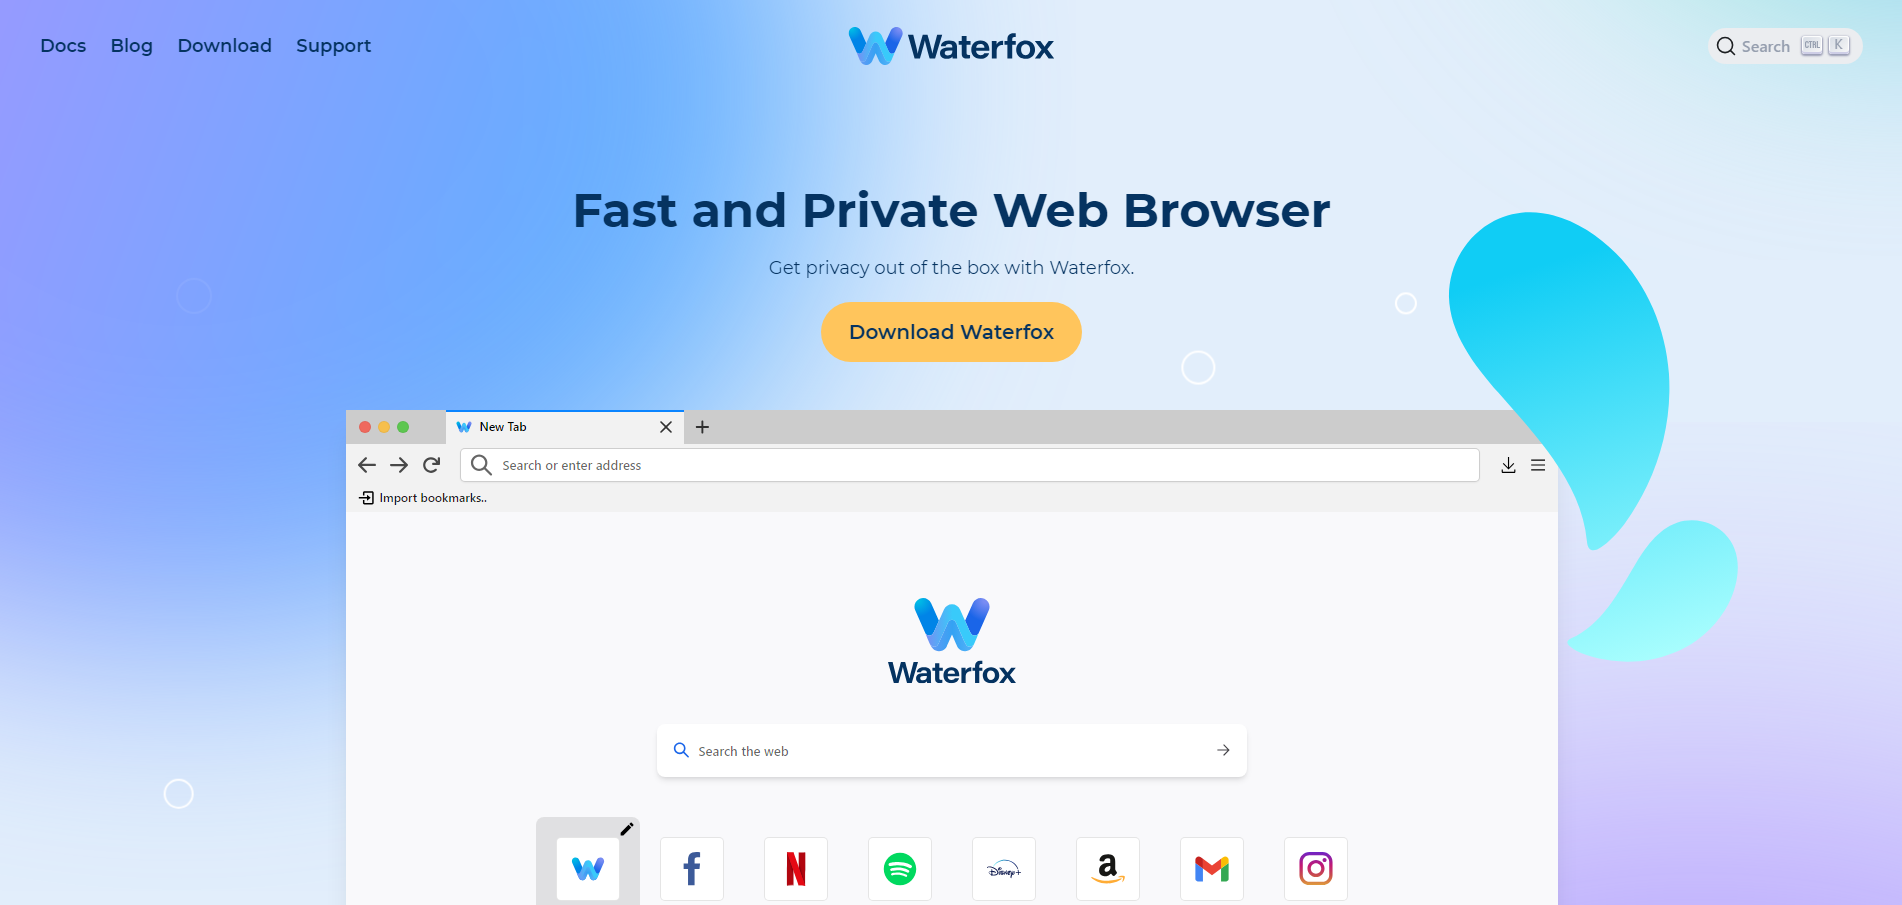 Un nuovo Browser, WaterFox. Scopriamolo insieme